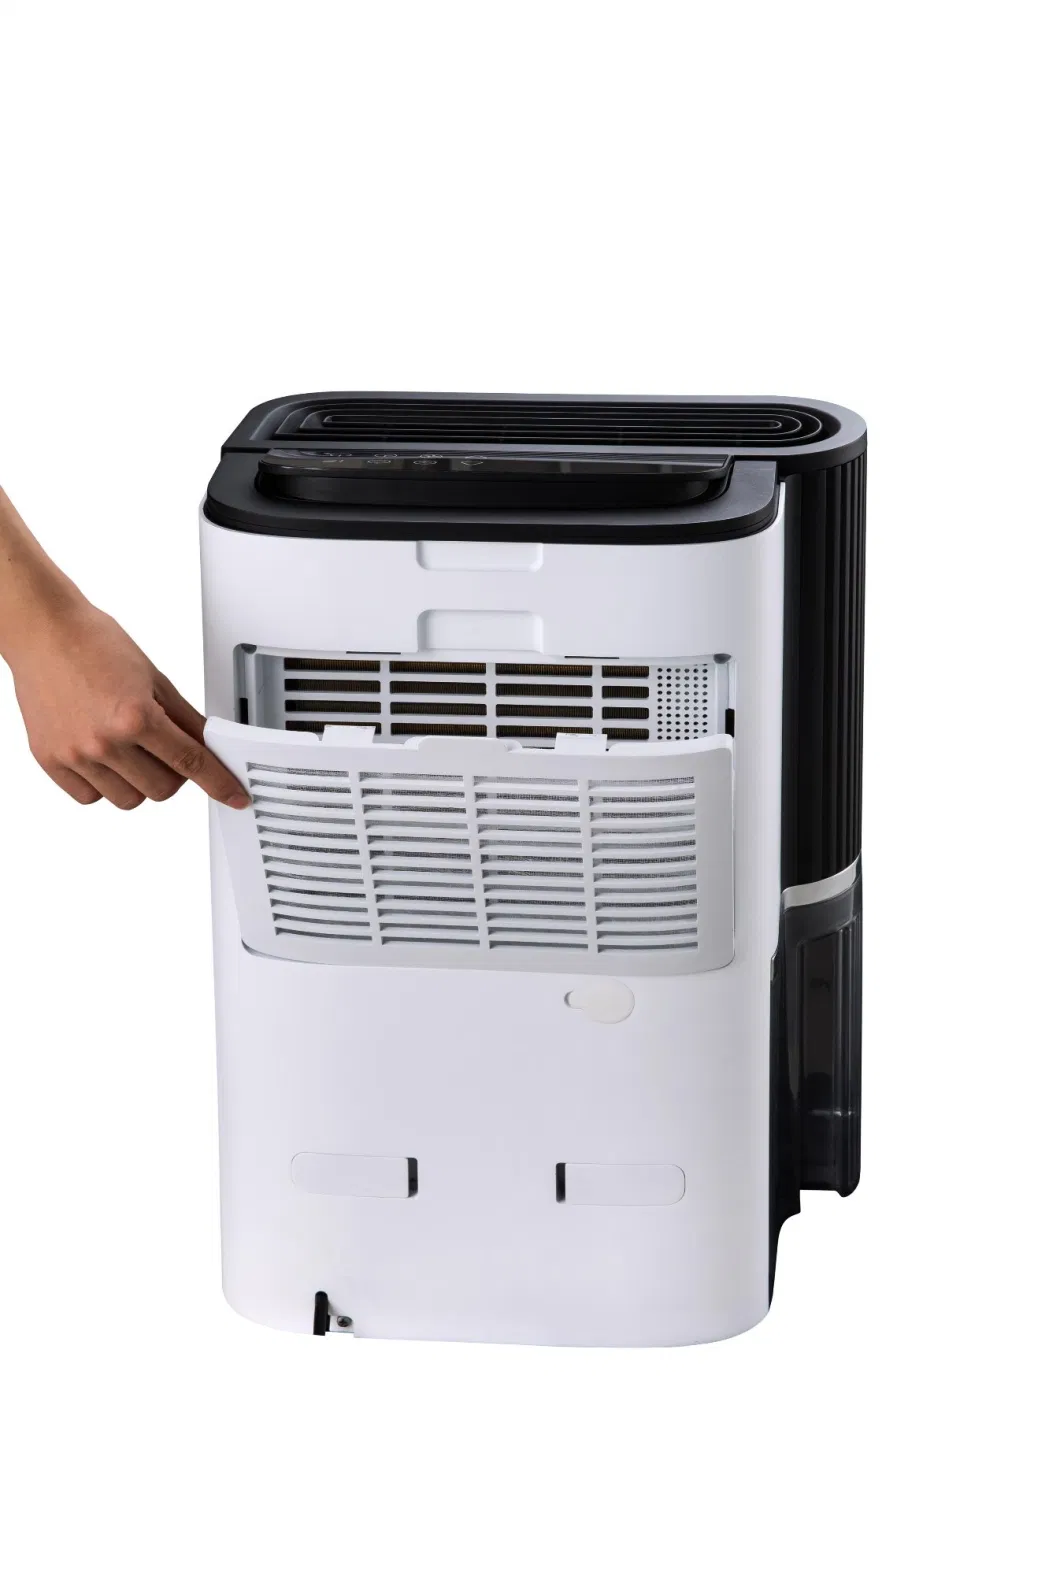 Dyd-T23A Clothes Drying & Air Purifier Air Dehumidifier